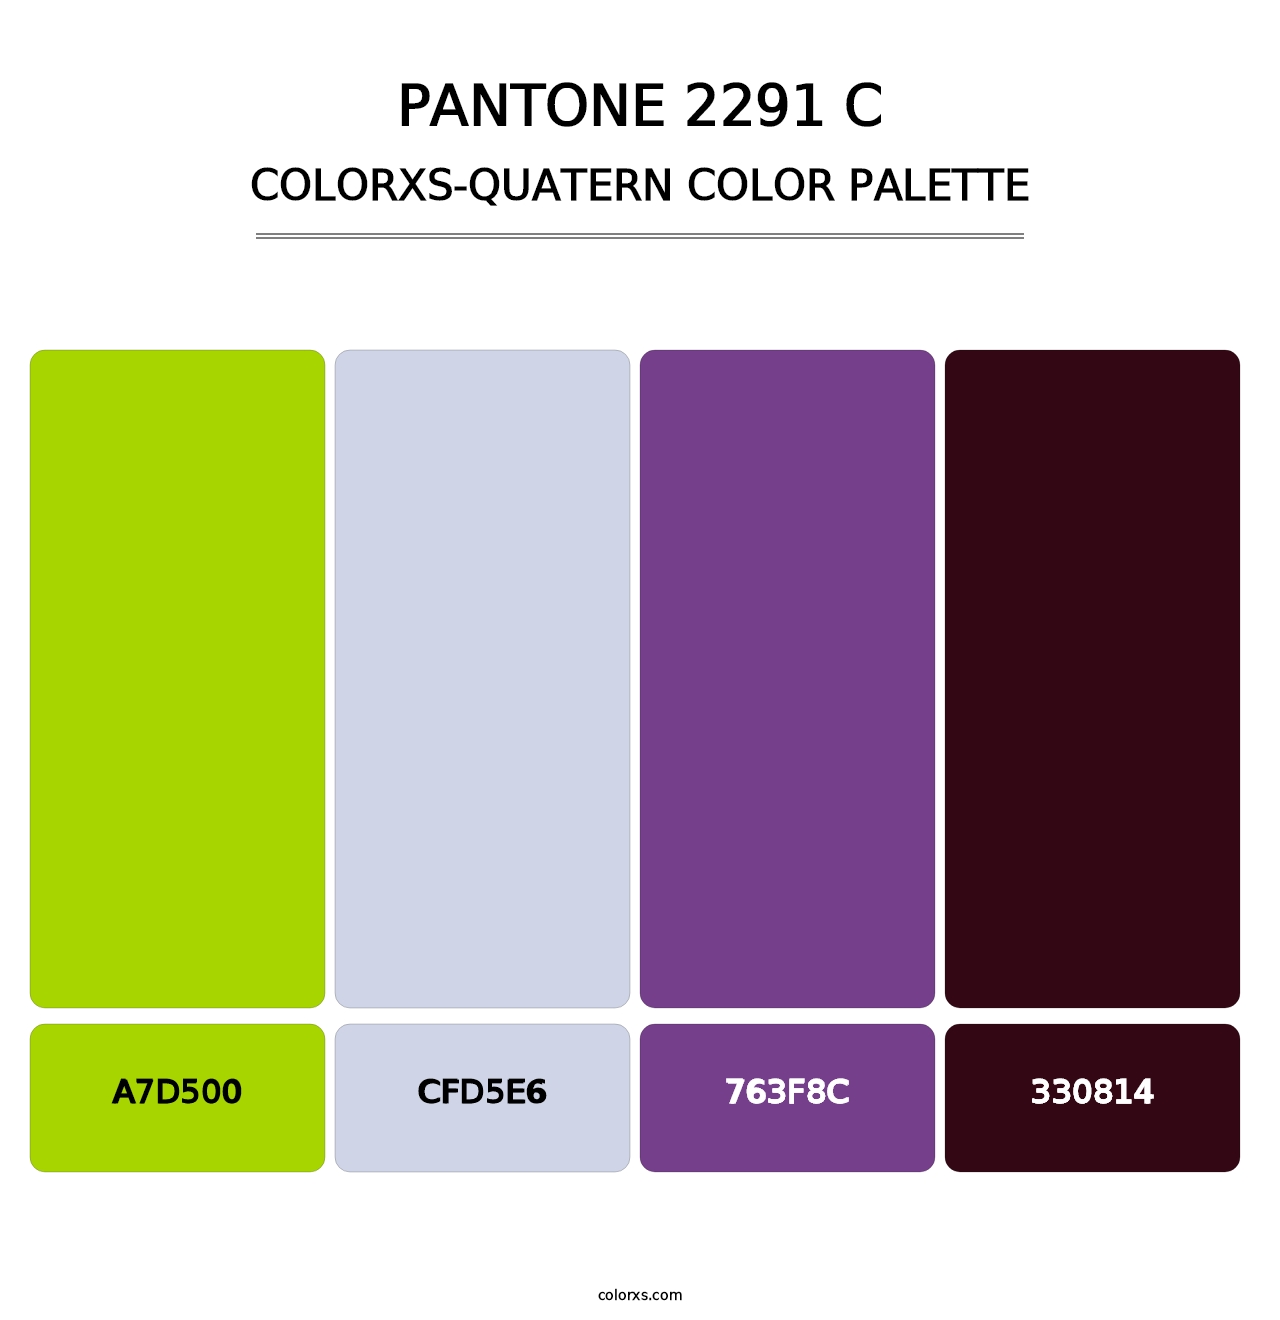 PANTONE 2291 C - Colorxs Quatern Palette